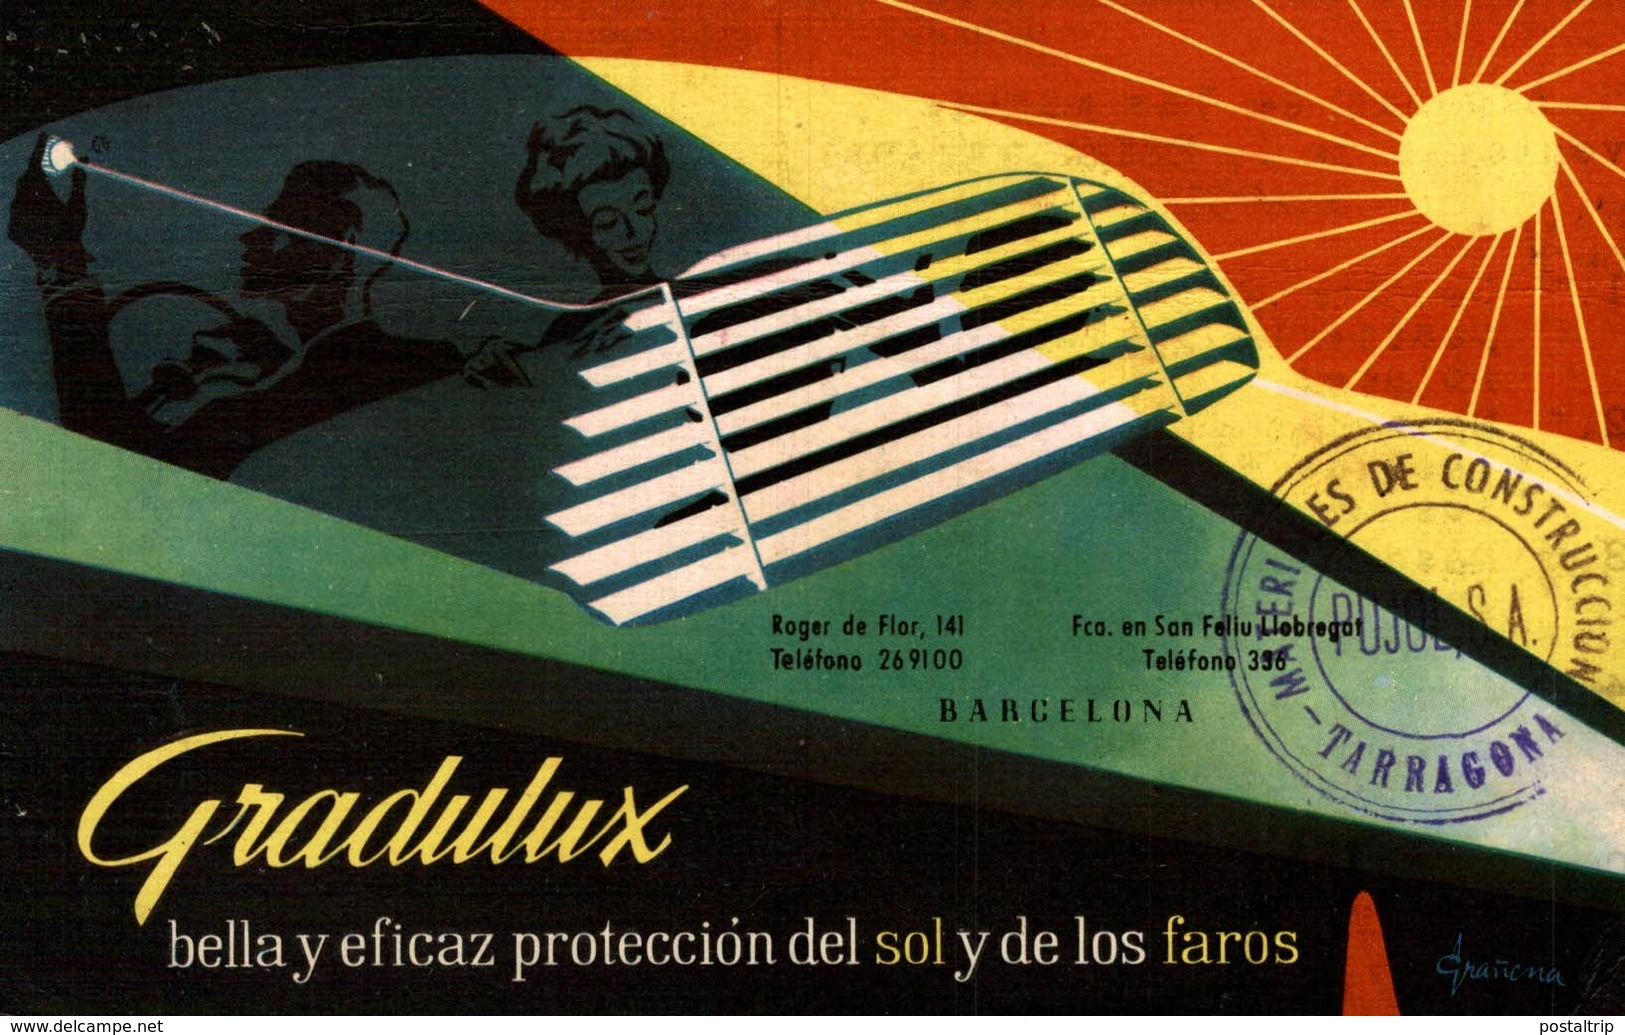 Gradulux, Proteccion Del Sol Y De Los Faros   PUBLICIDAD  PUBLICITARIA. - Publicidad